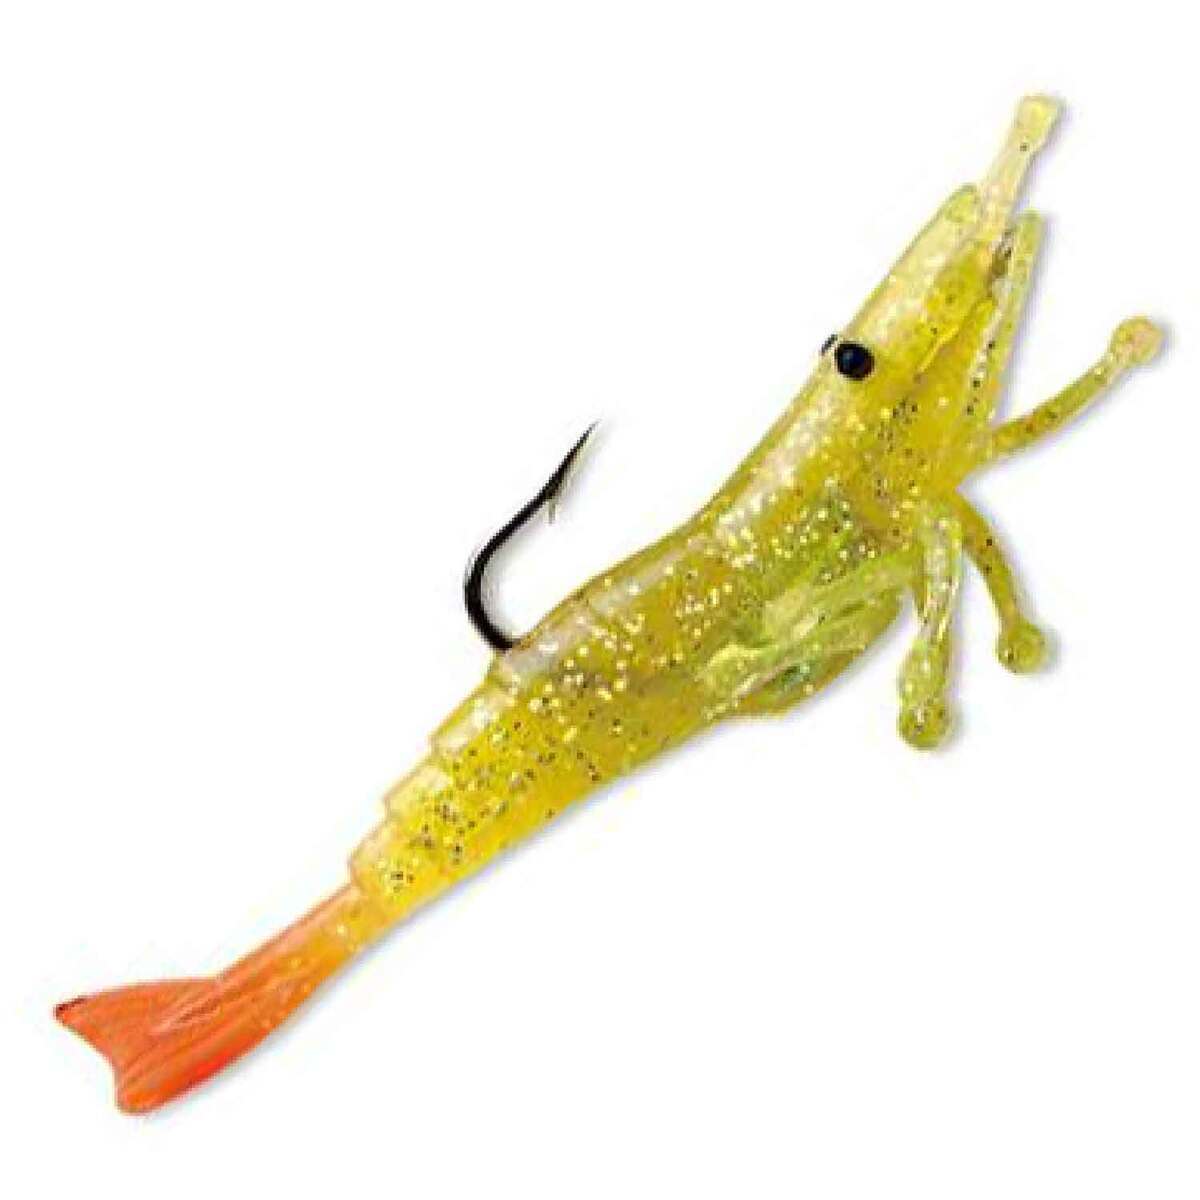 https://www.sportsmans.com/medias/storm-wildeye-live-shrimp-soft-swimbait-natural-fluorescent-orange-14oz-3in-1666594-1.jpg?context=bWFzdGVyfGltYWdlc3w0NTk1NnxpbWFnZS9qcGVnfGFHSTFMMmc0TVM4eE1EZzFNRGt3TVRZNE9ETTFNQzh4TmpZMk5UazBMVEZmWW1GelpTMWpiMjUyWlhKemFXOXVSbTl5YldGMFh6RXlNREF0WTI5dWRtVnljMmx2YmtadmNtMWhkQXwzNjZmMWU1MzUxZDIzZjA4ZWUzYWY1Y2IyNDYwMzIwMDZmZjBhYWViZTczZmRhYmM1ZmIxOTViMWY4MzYxYWI3